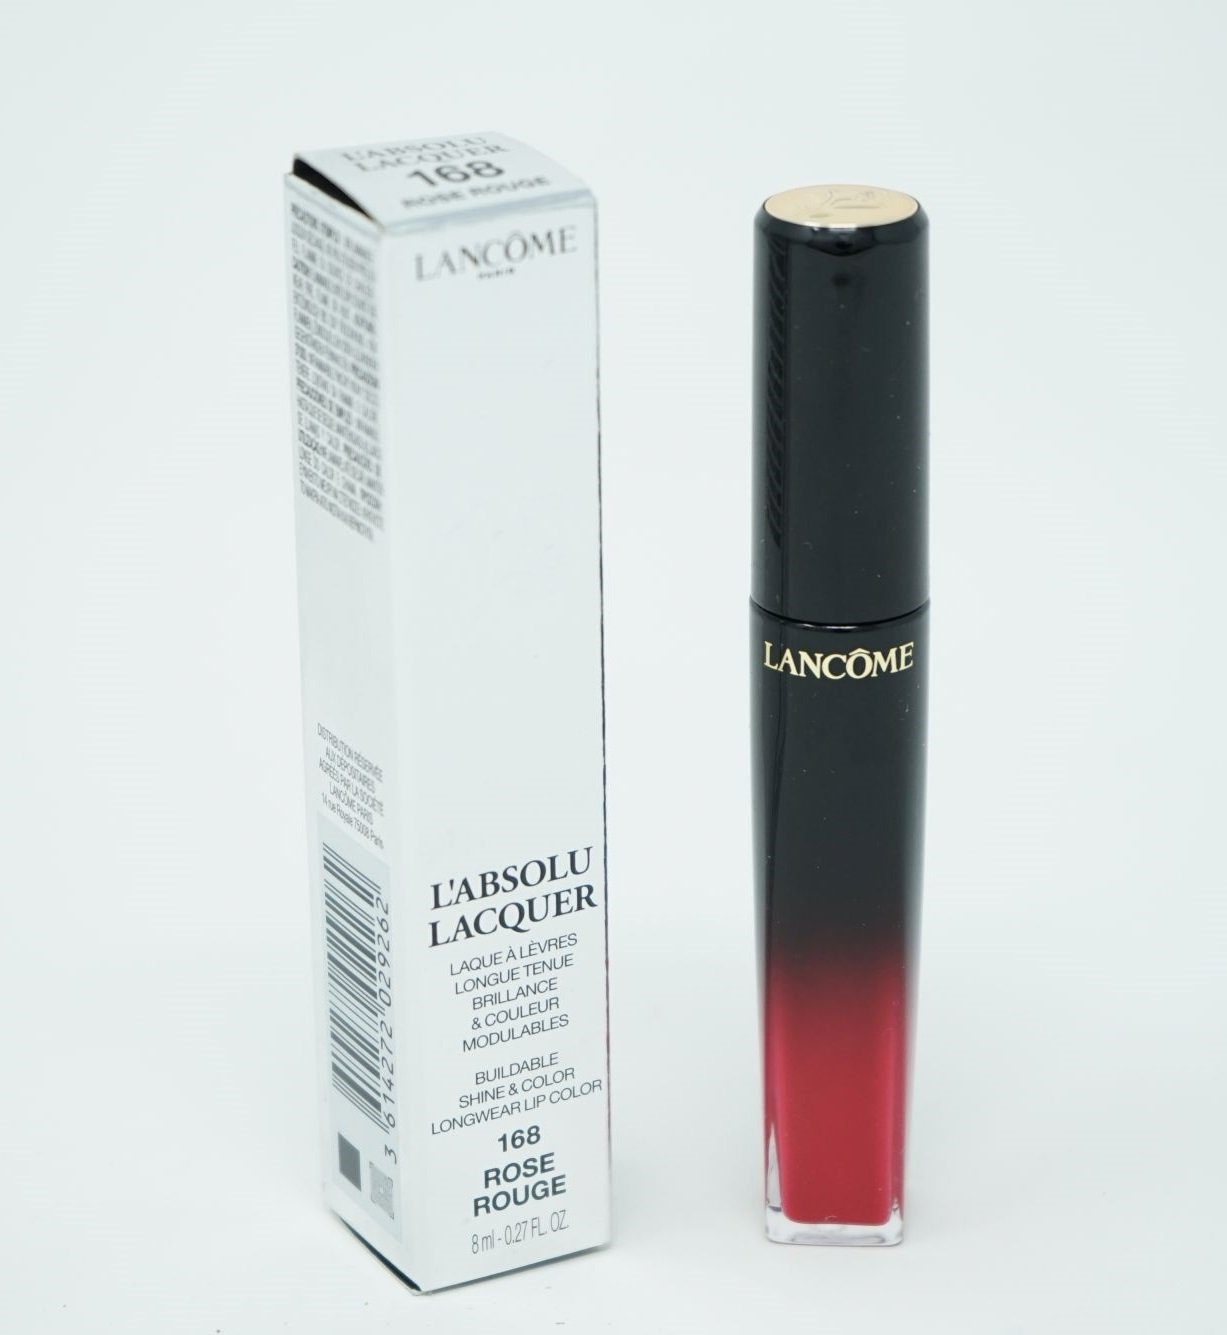 LANCOME Eau de Toilette Lipstick Lacquer Liquid Rose Rouge Lipgloss L'Absolu LANCOME 168